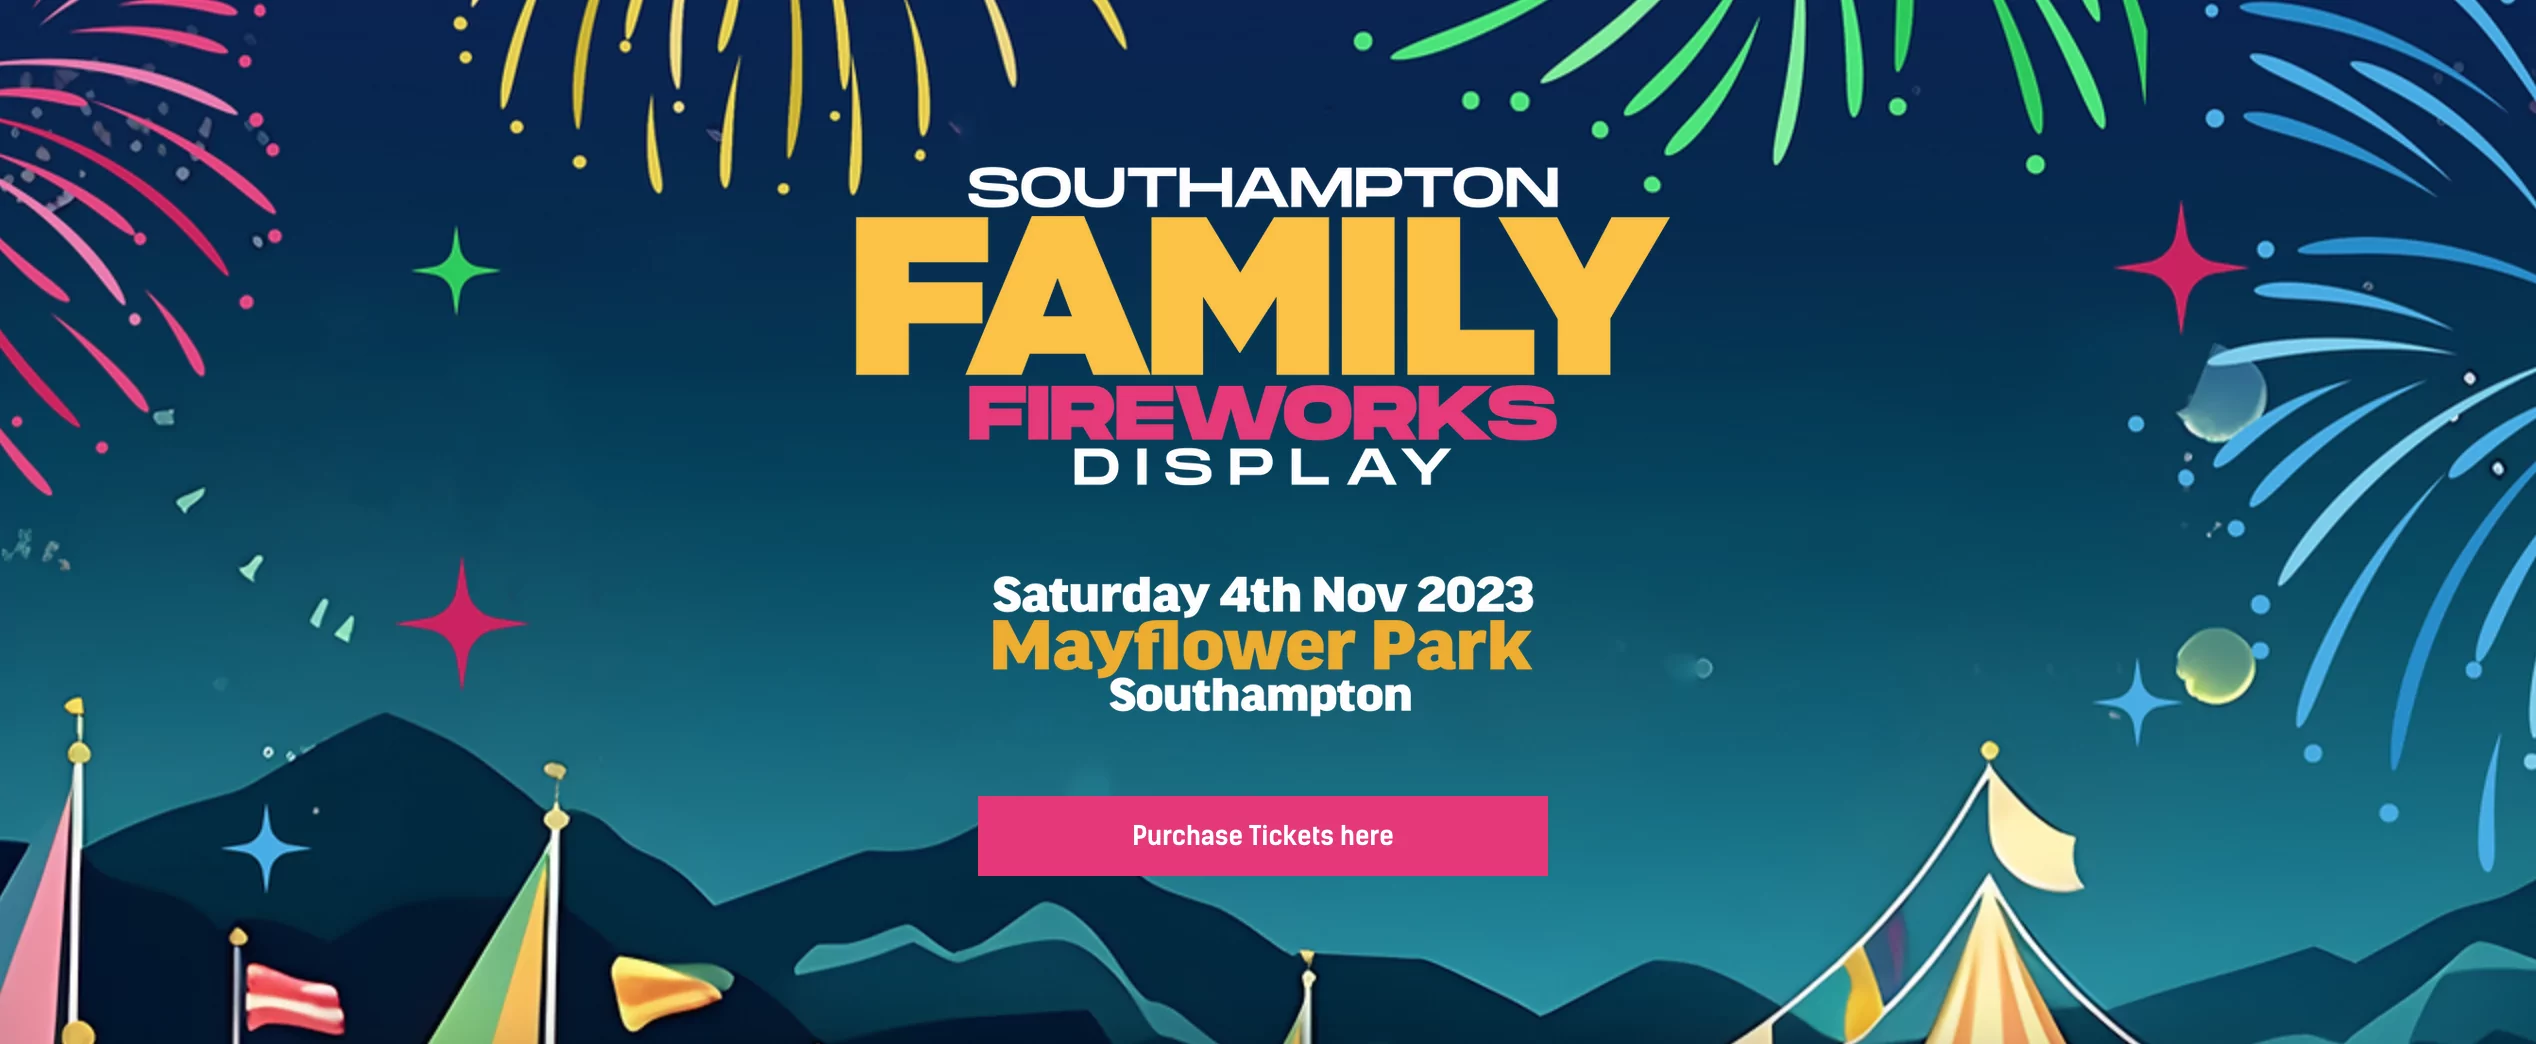 Southampton Family Fireworks Display